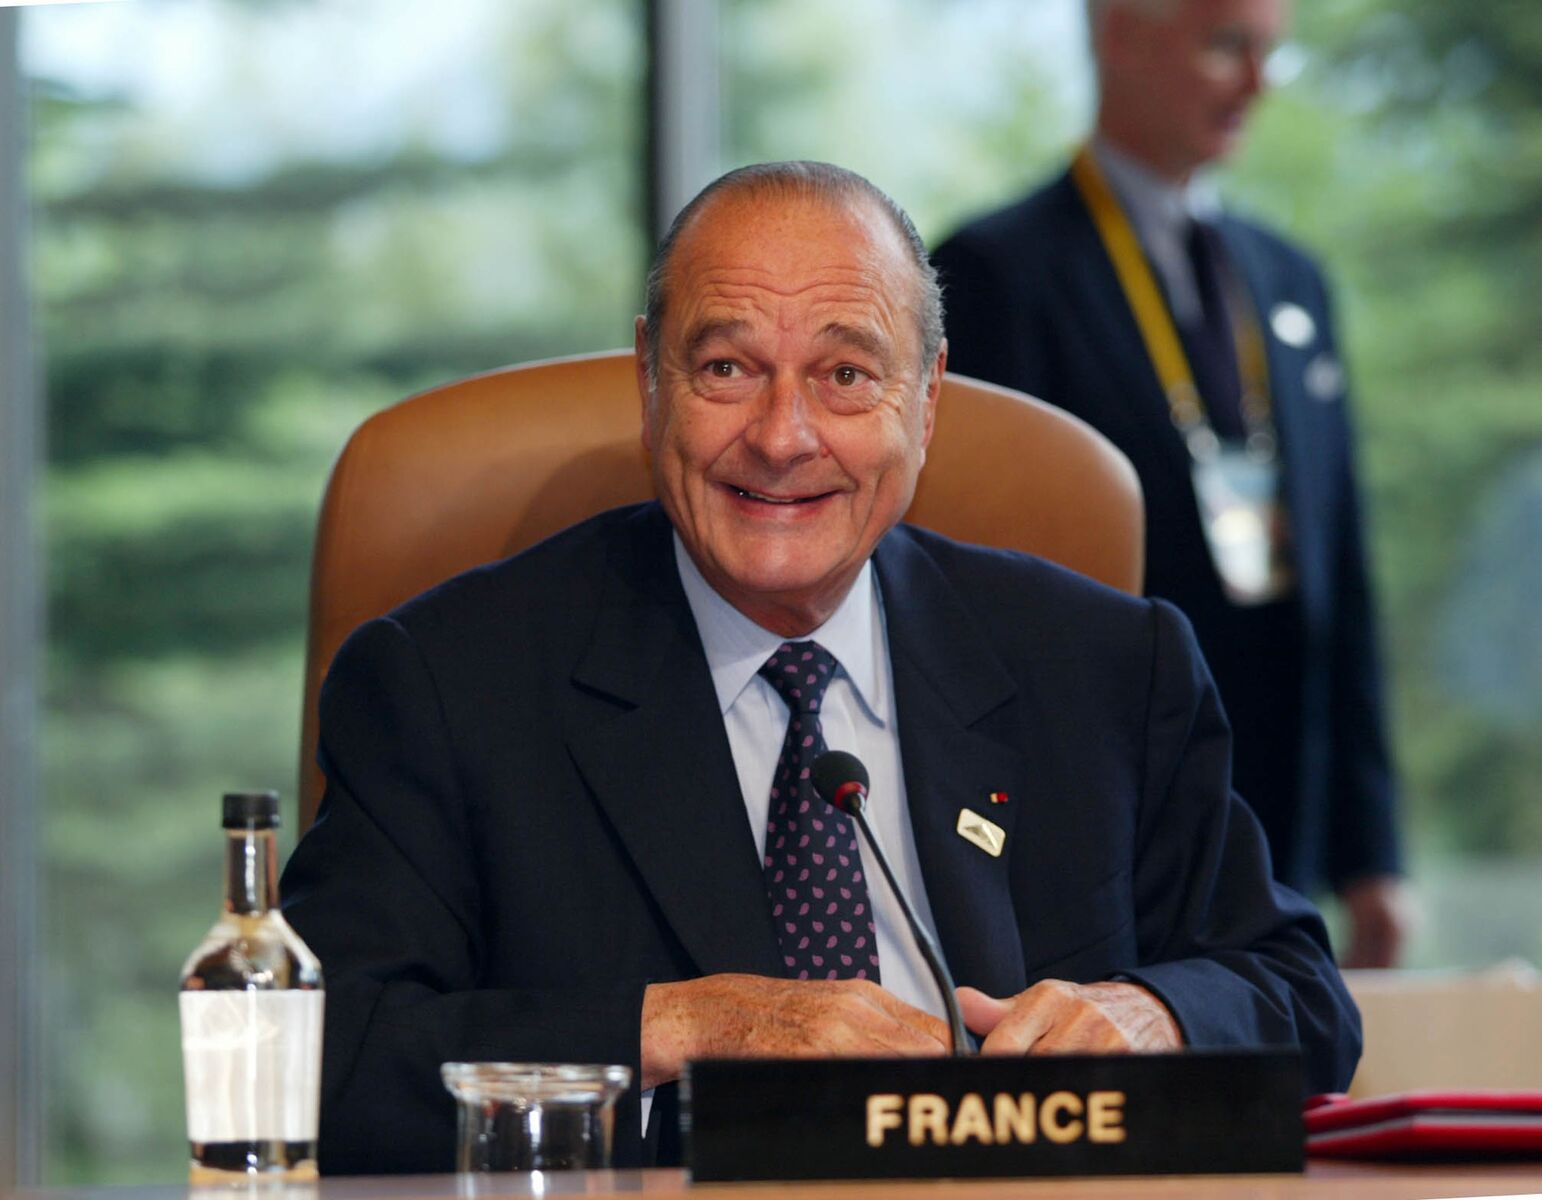 Jacques Chirac entrain de donner une conférence - Photo : Getty Images